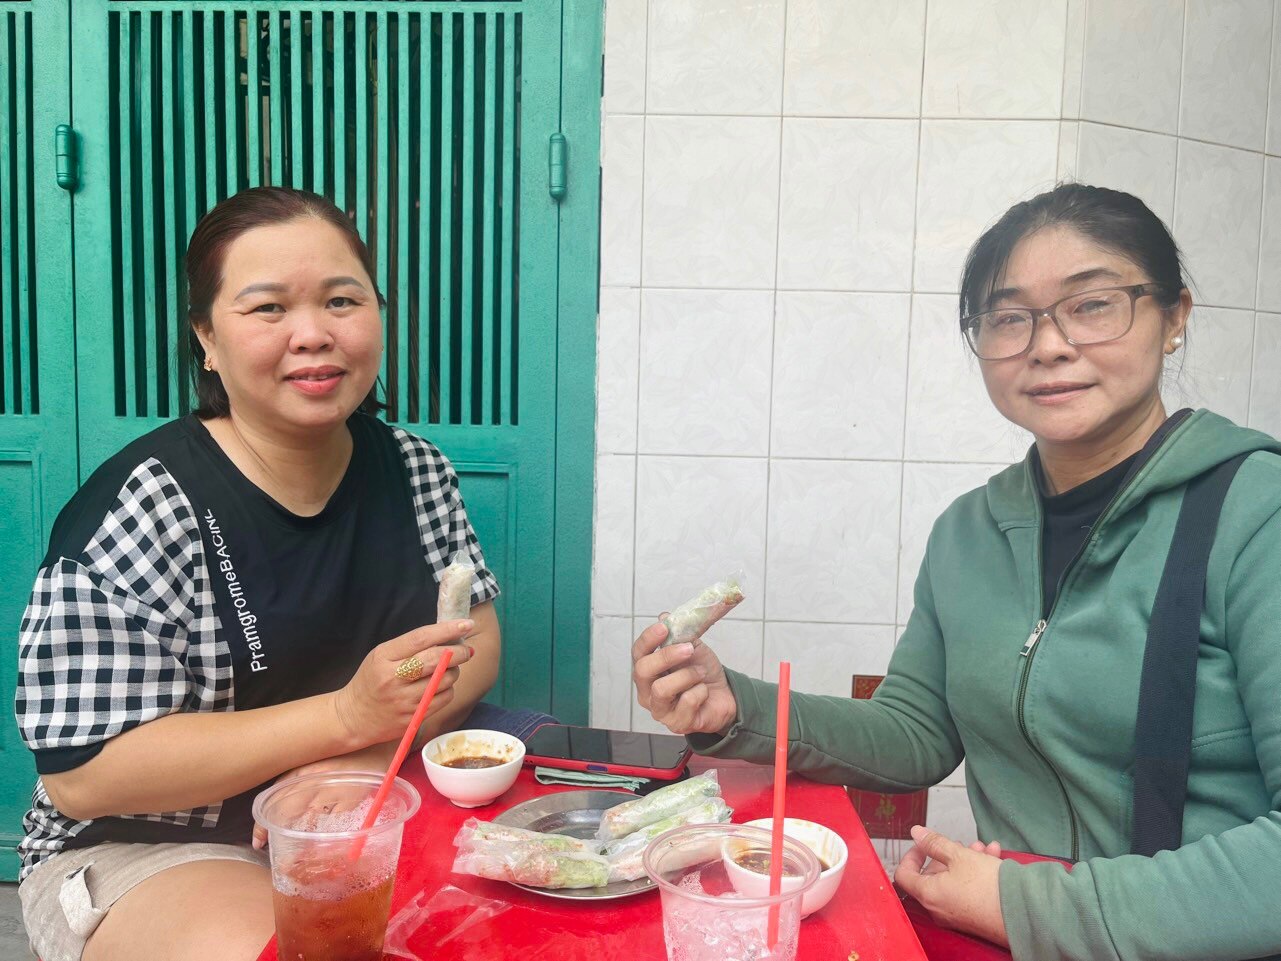 Bò bía rẻ nhất Sài Gòn: bán hơn 25 năm, khách mê vì nước chấm độc quyền - Ảnh 4.